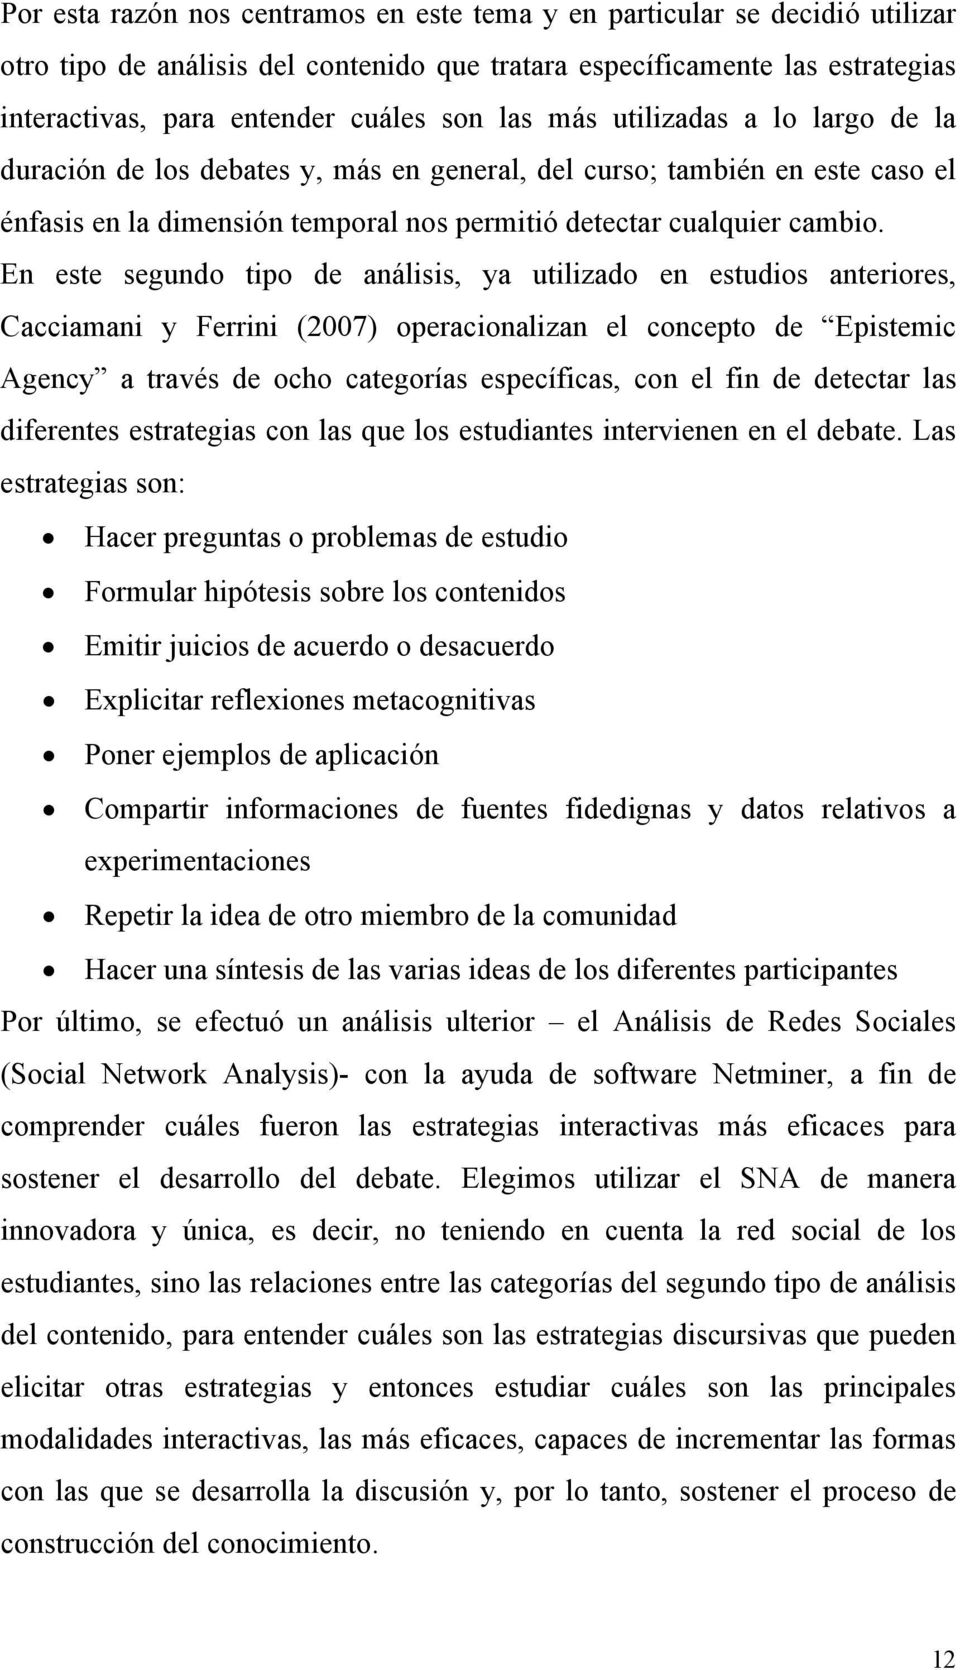 En este segundo tipo de análisis, ya utilizado en estudios anteriores, Cacciamani y Ferrini (2007) operacionalizan el concepto de Epistemic Agency a través de ocho categorías específicas, con el fin